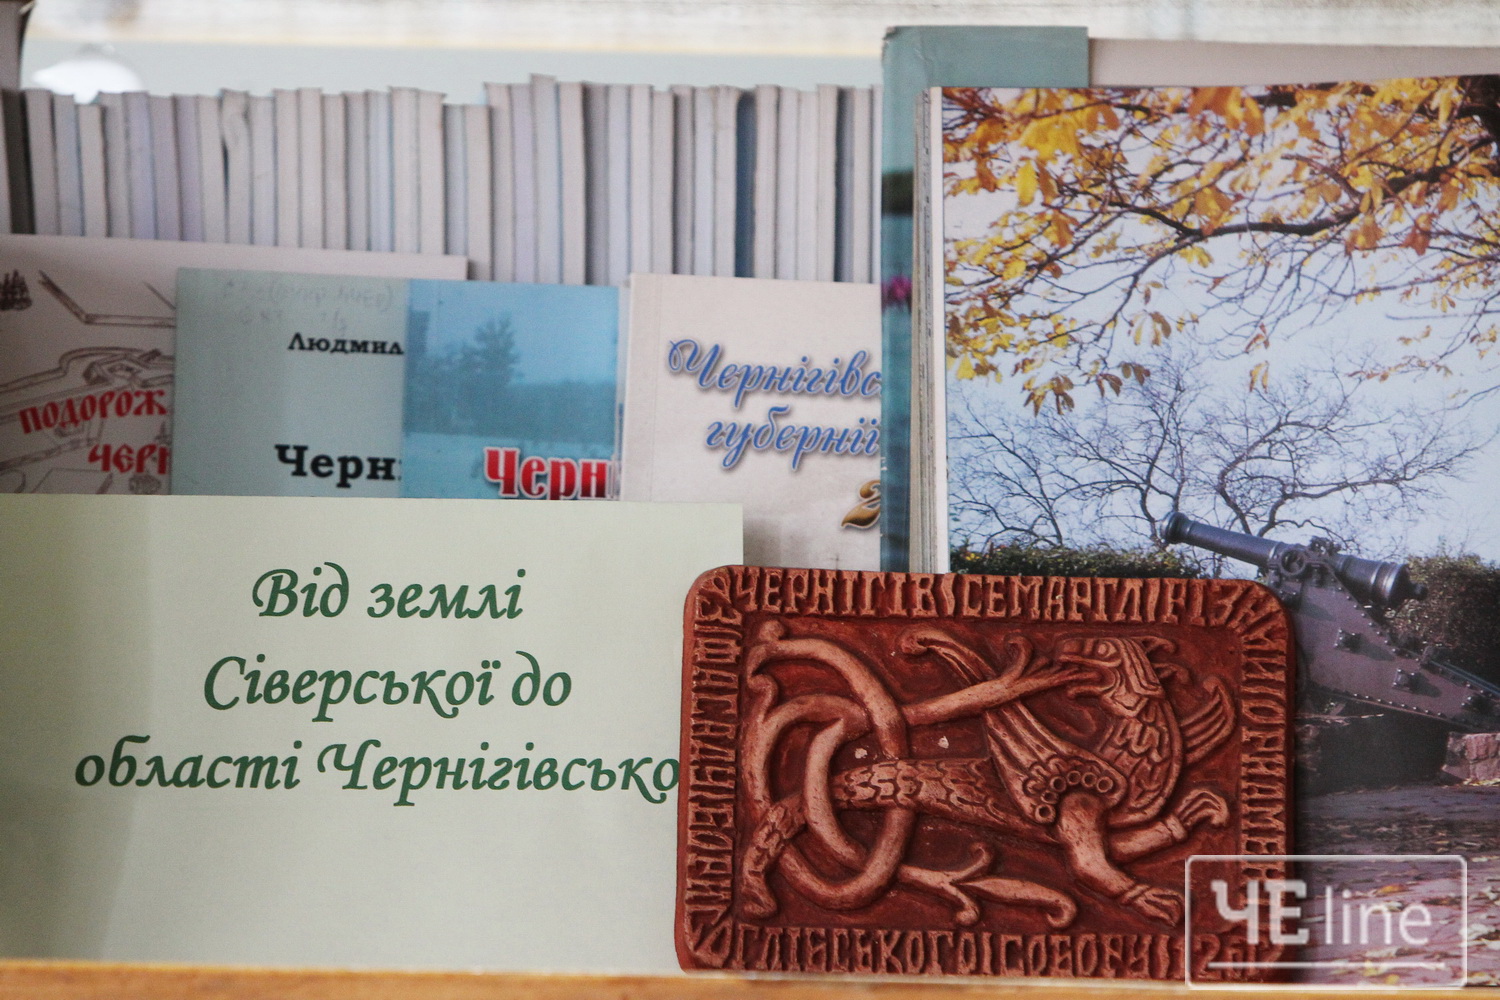 У бібліотеці Коцюбинського відкрили ілюстровану виставку до Дня міста (Фото)